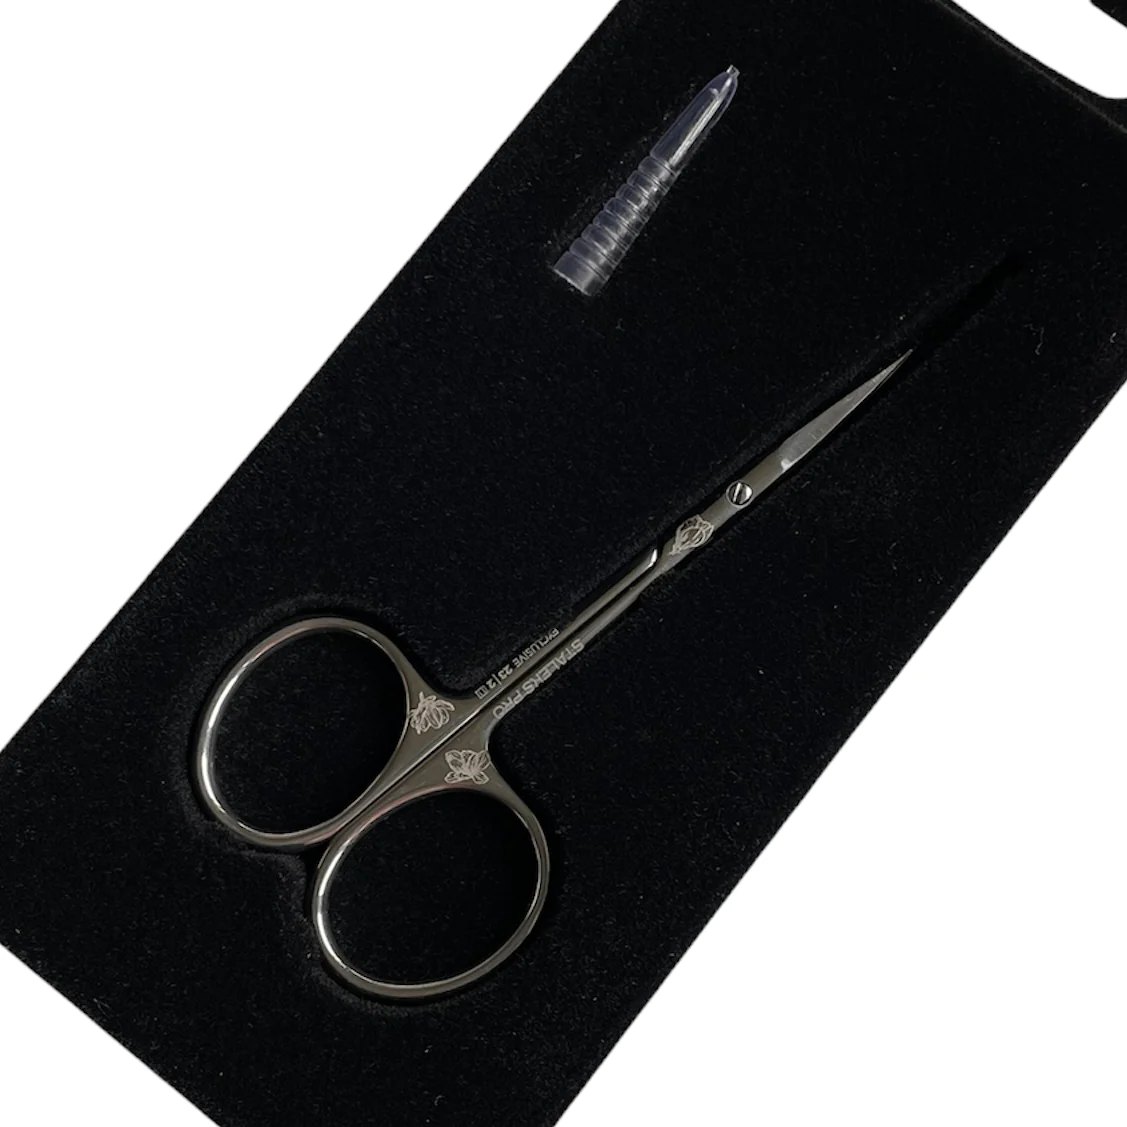 STALEKS PRO Cuticle Scissors, EXCLUSIVE 23/1m (BLADE 21 MM) "Magnolia"